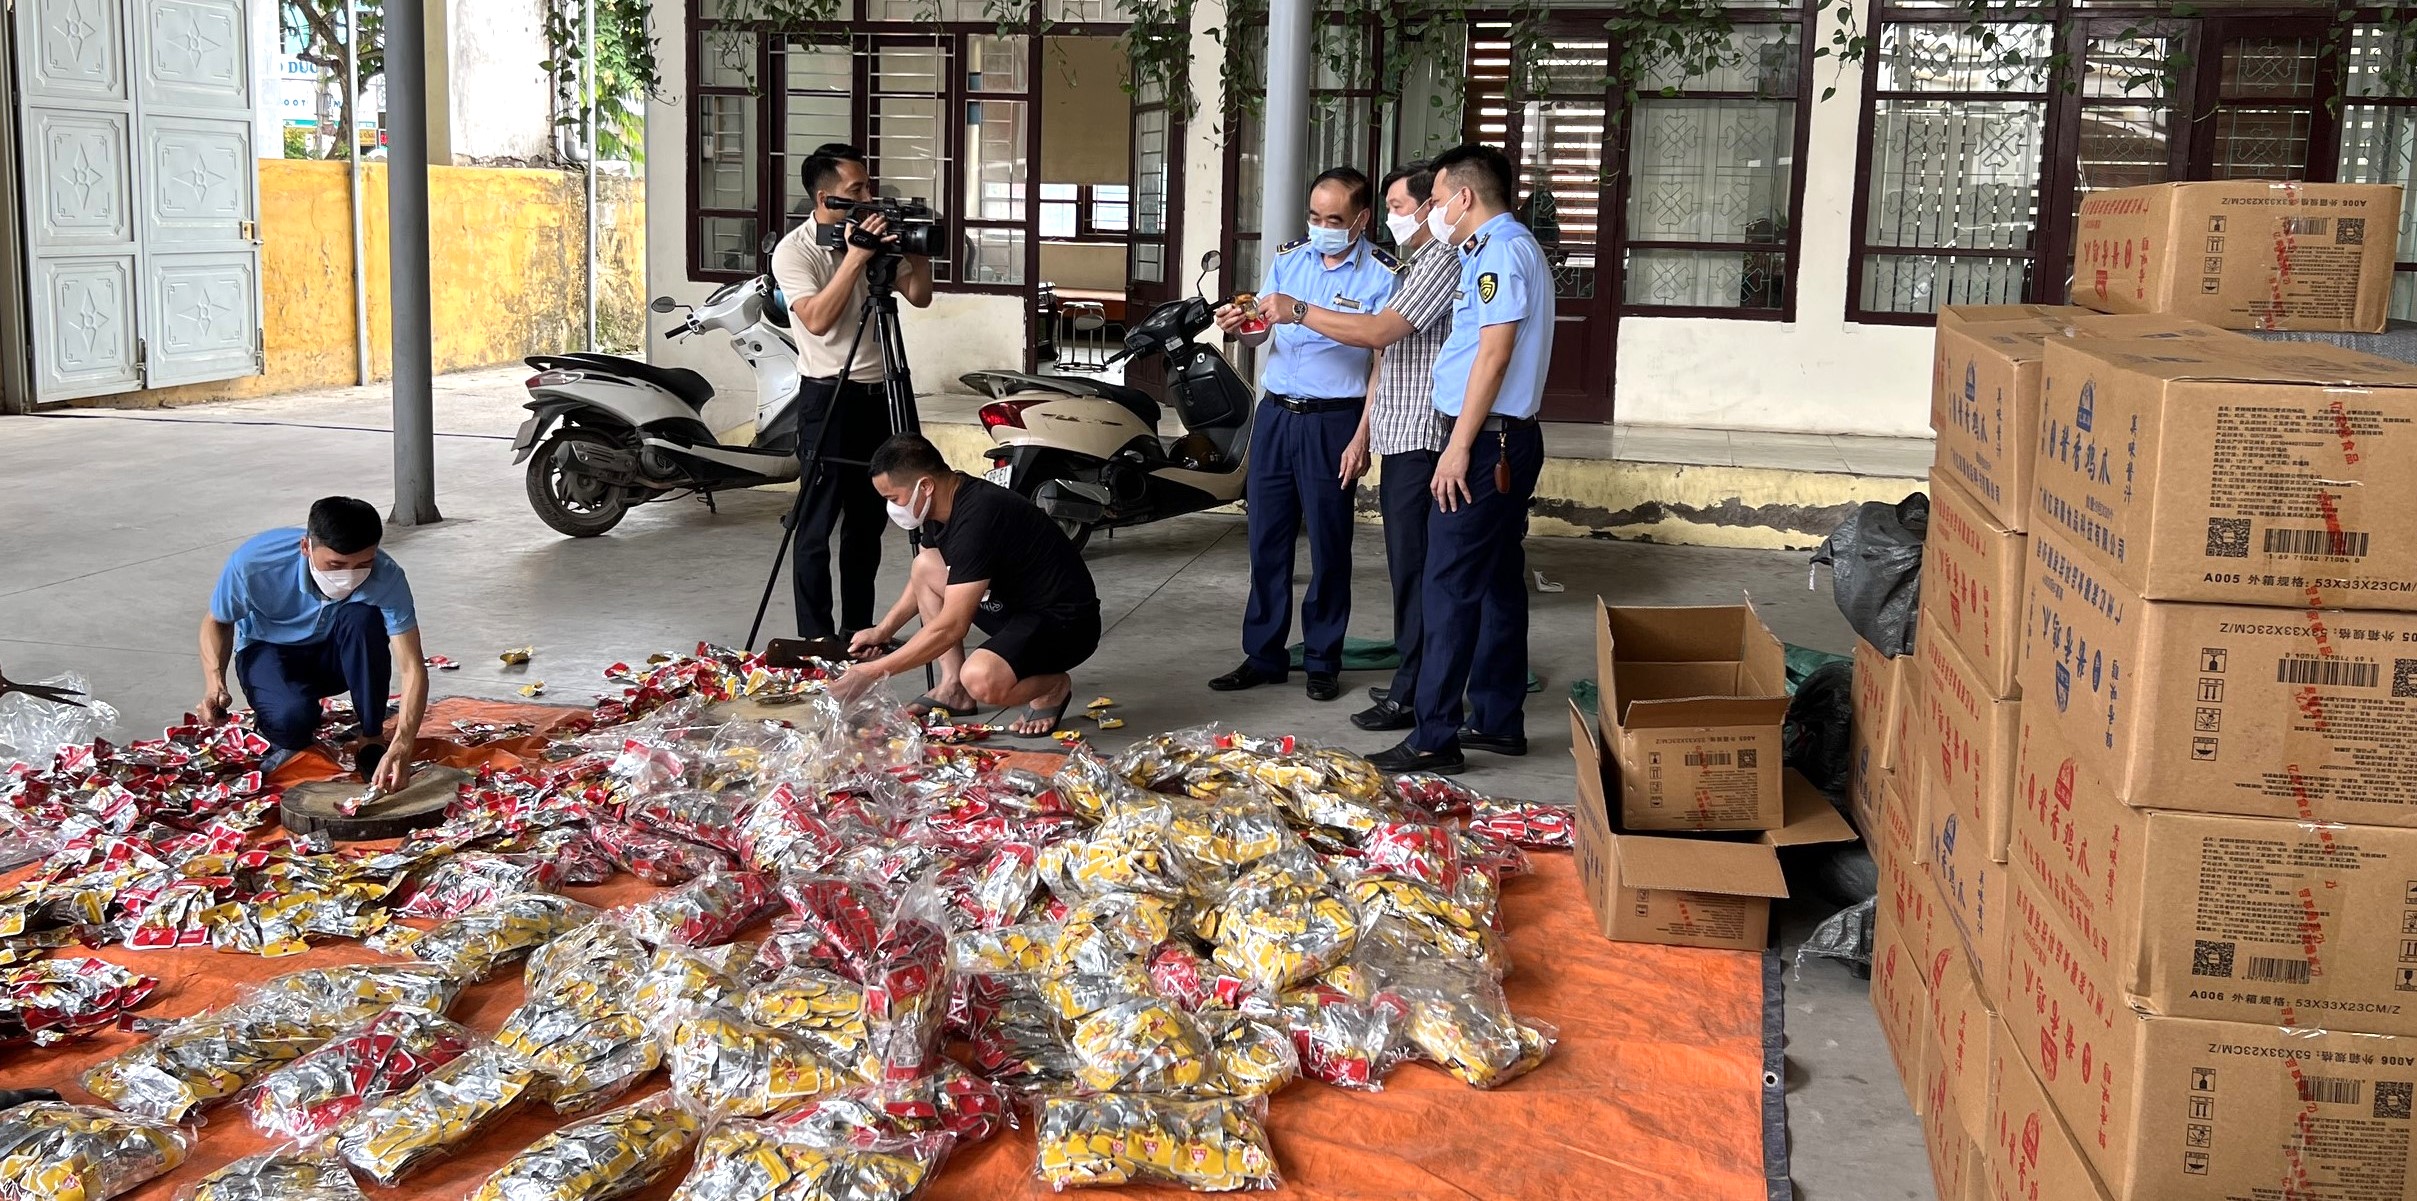 Lực lượng Quản lý thị trường Bắc Ninh kiểm tra hàng hóa vi phạm